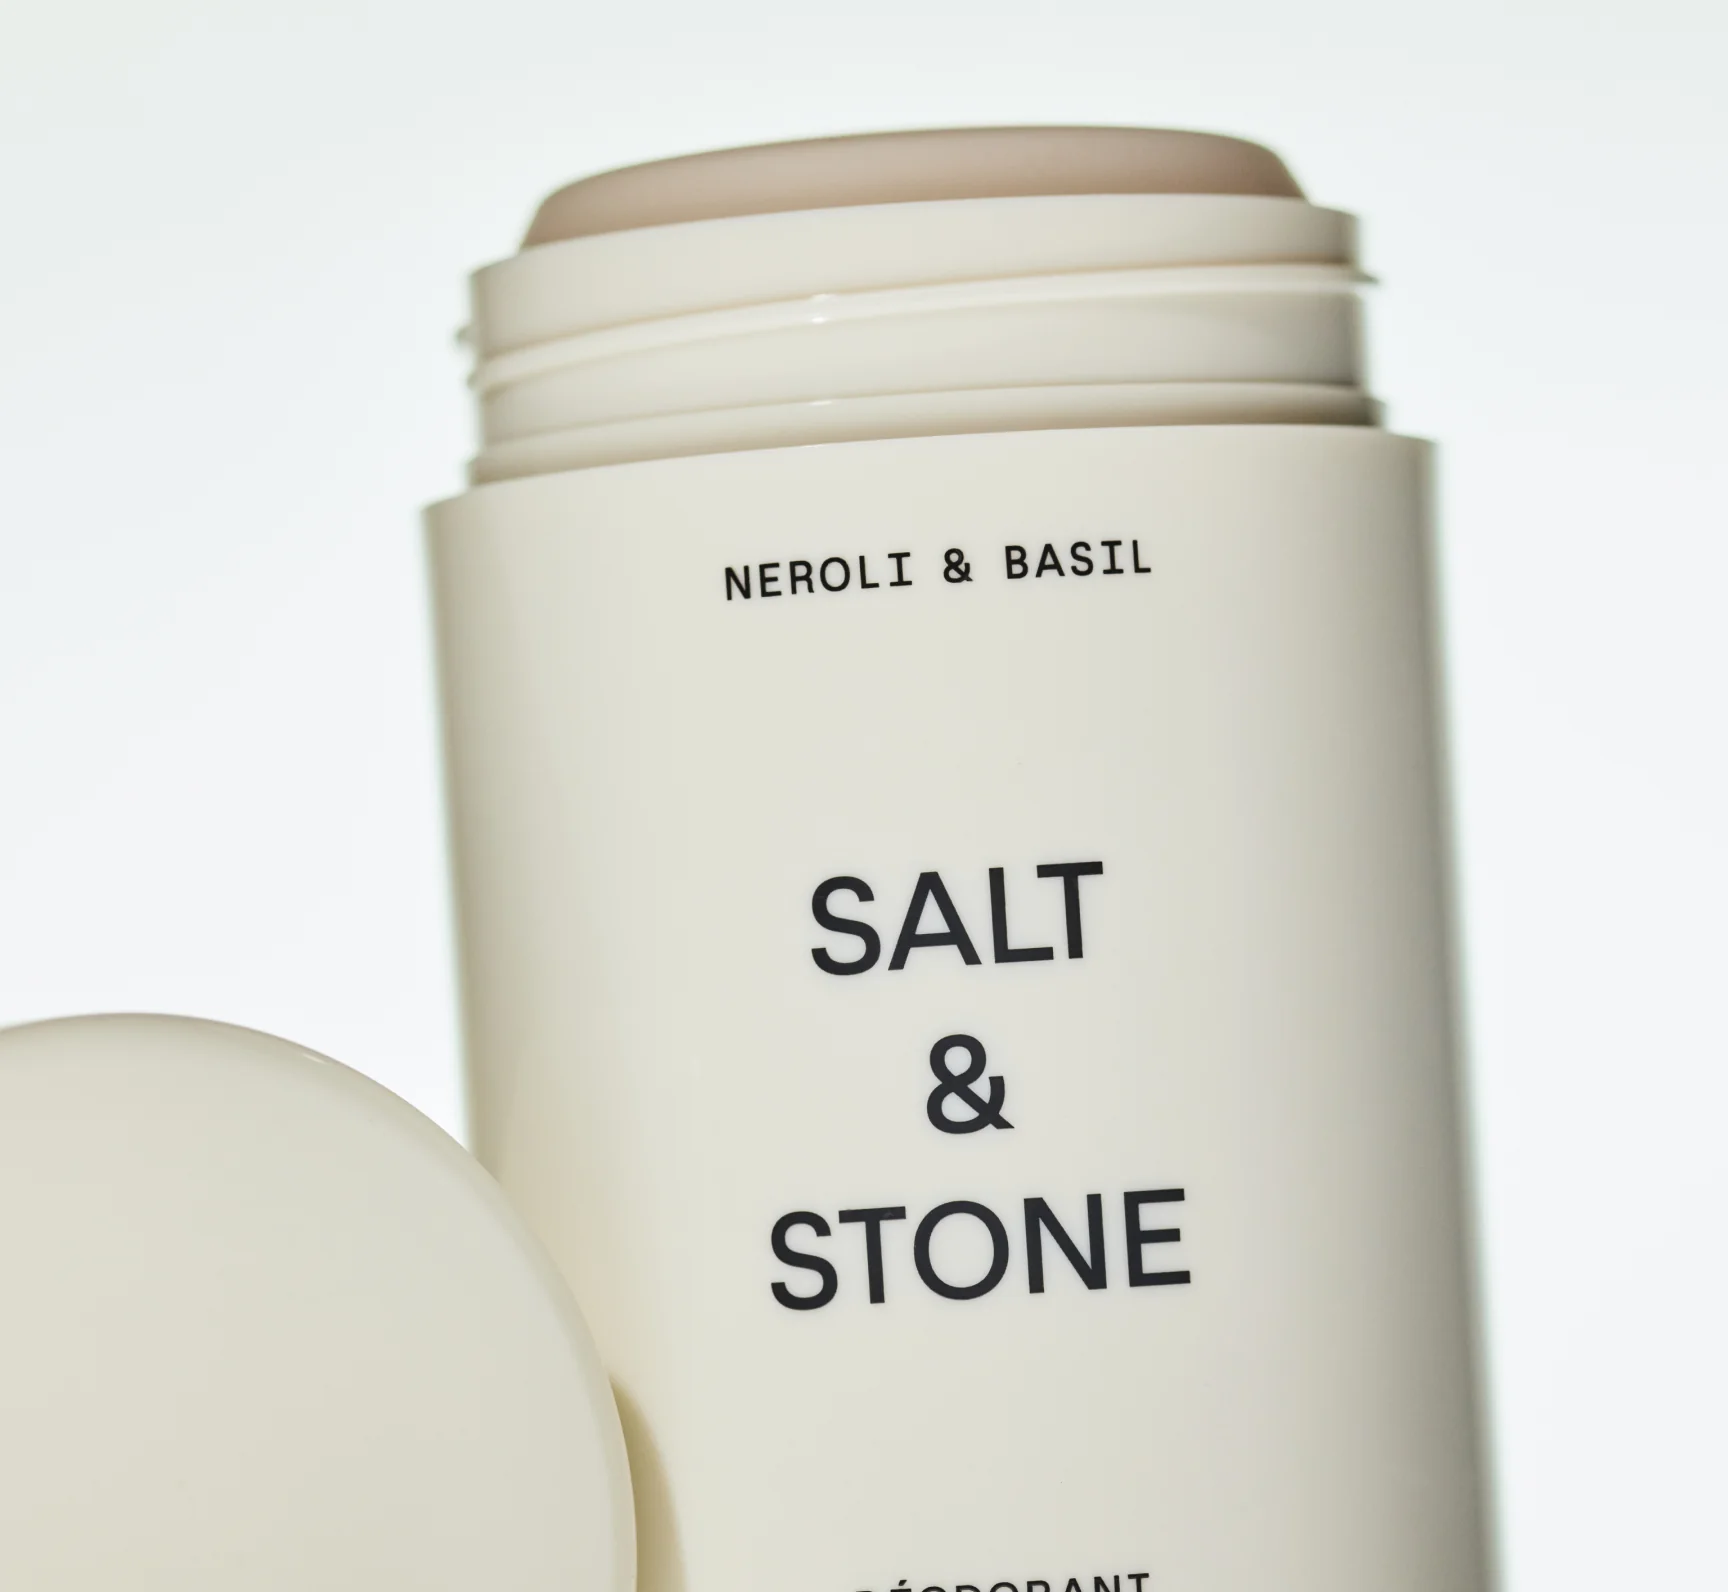 Salt & Stone naturaalne deodorant, Santal & Vetiver Hooldusvahendid ja kosmeetika - HellyK - Kvaliteetsed lasteriided, villariided, barefoot jalatsid